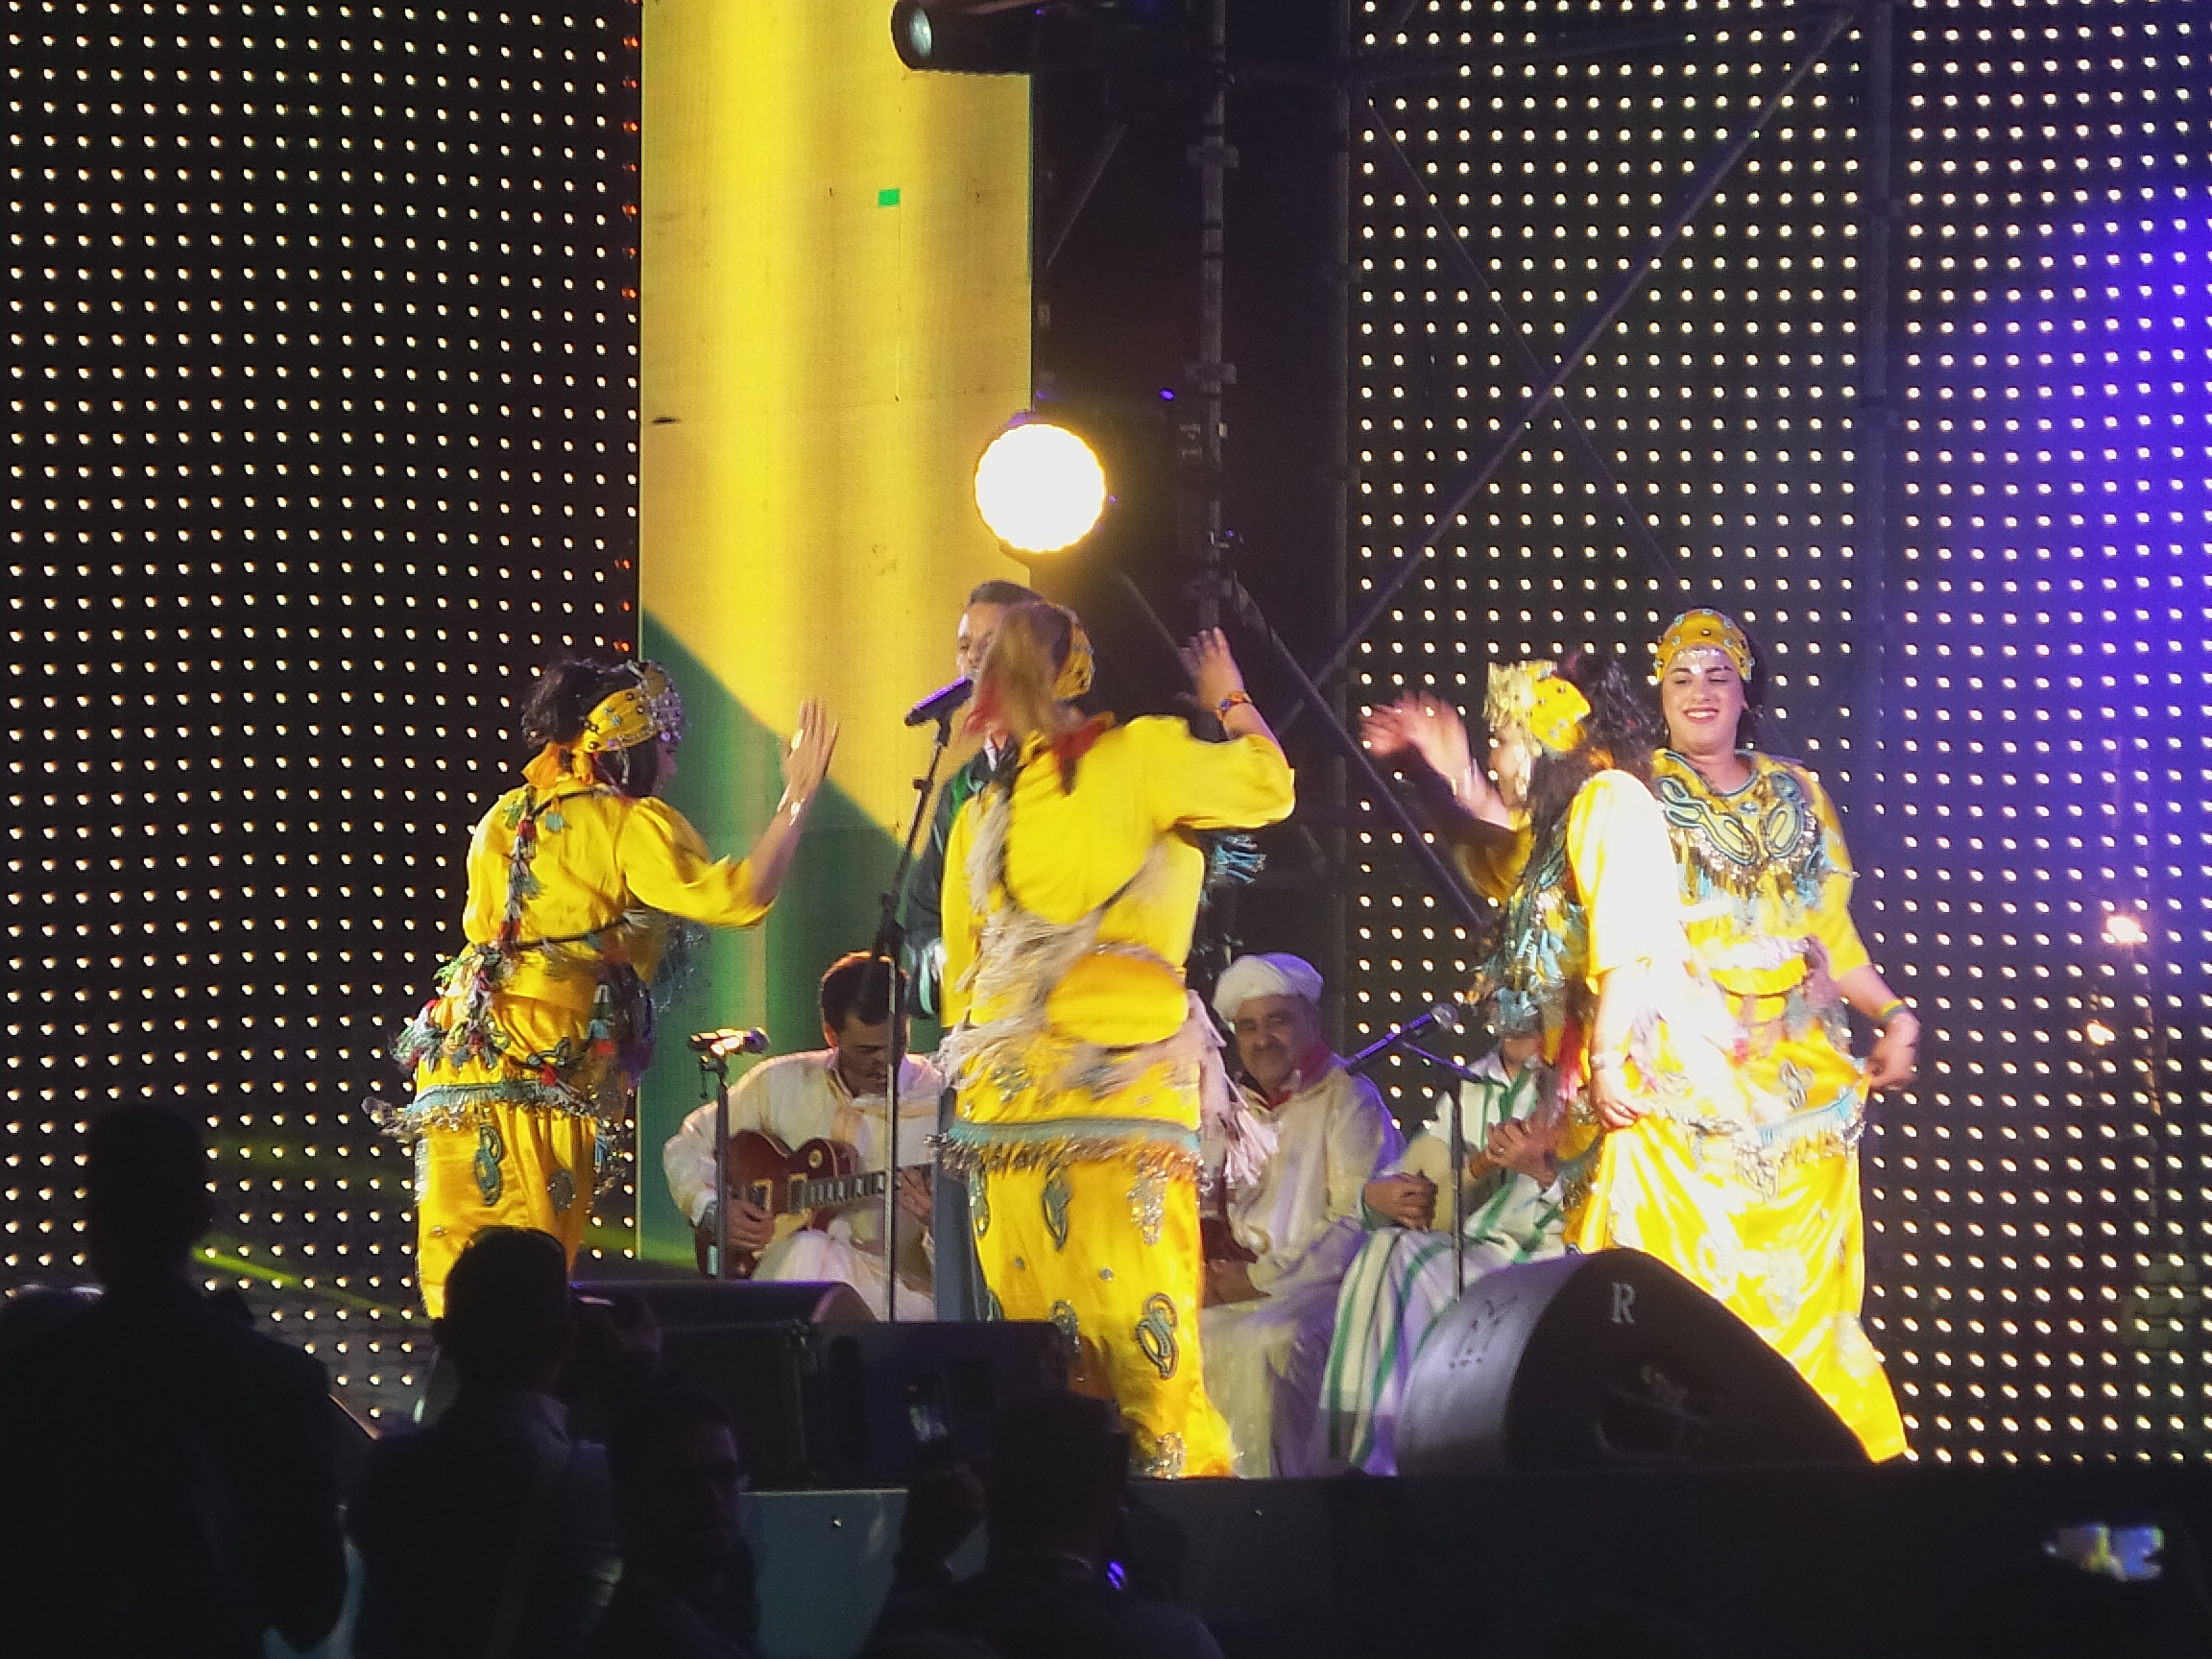 الرايس سعيد يفتتح مهرجان تيميتار للموسيقى الأمازيغية في أغادير (4)